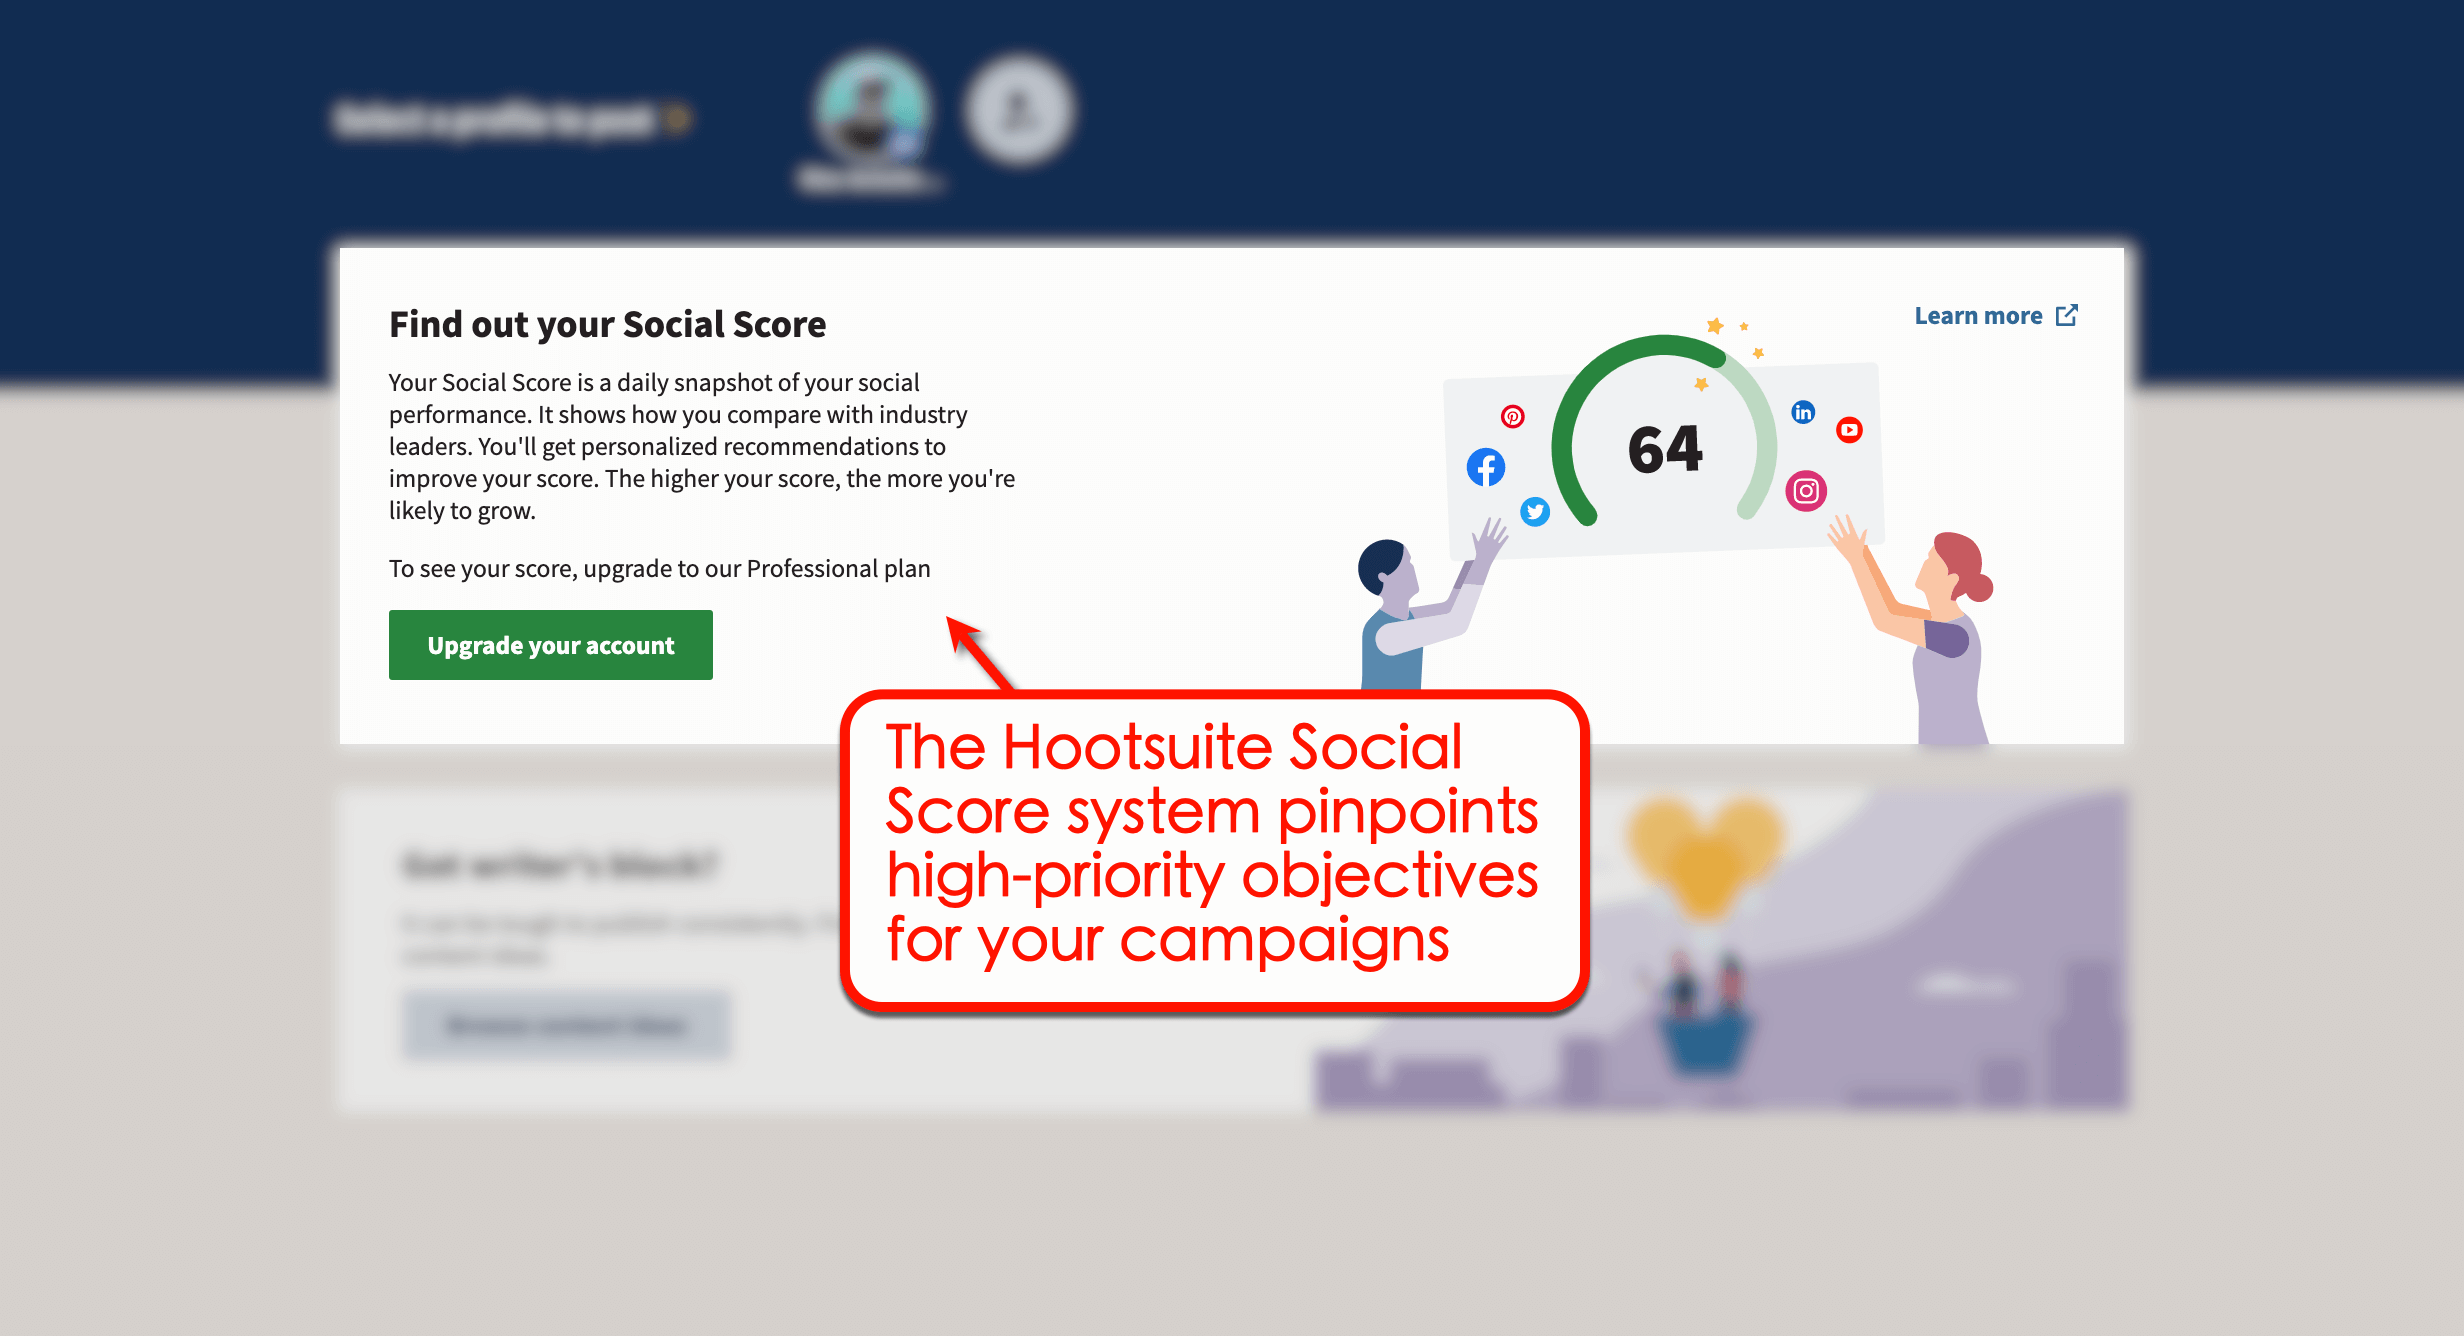 Hootsuite's social score system